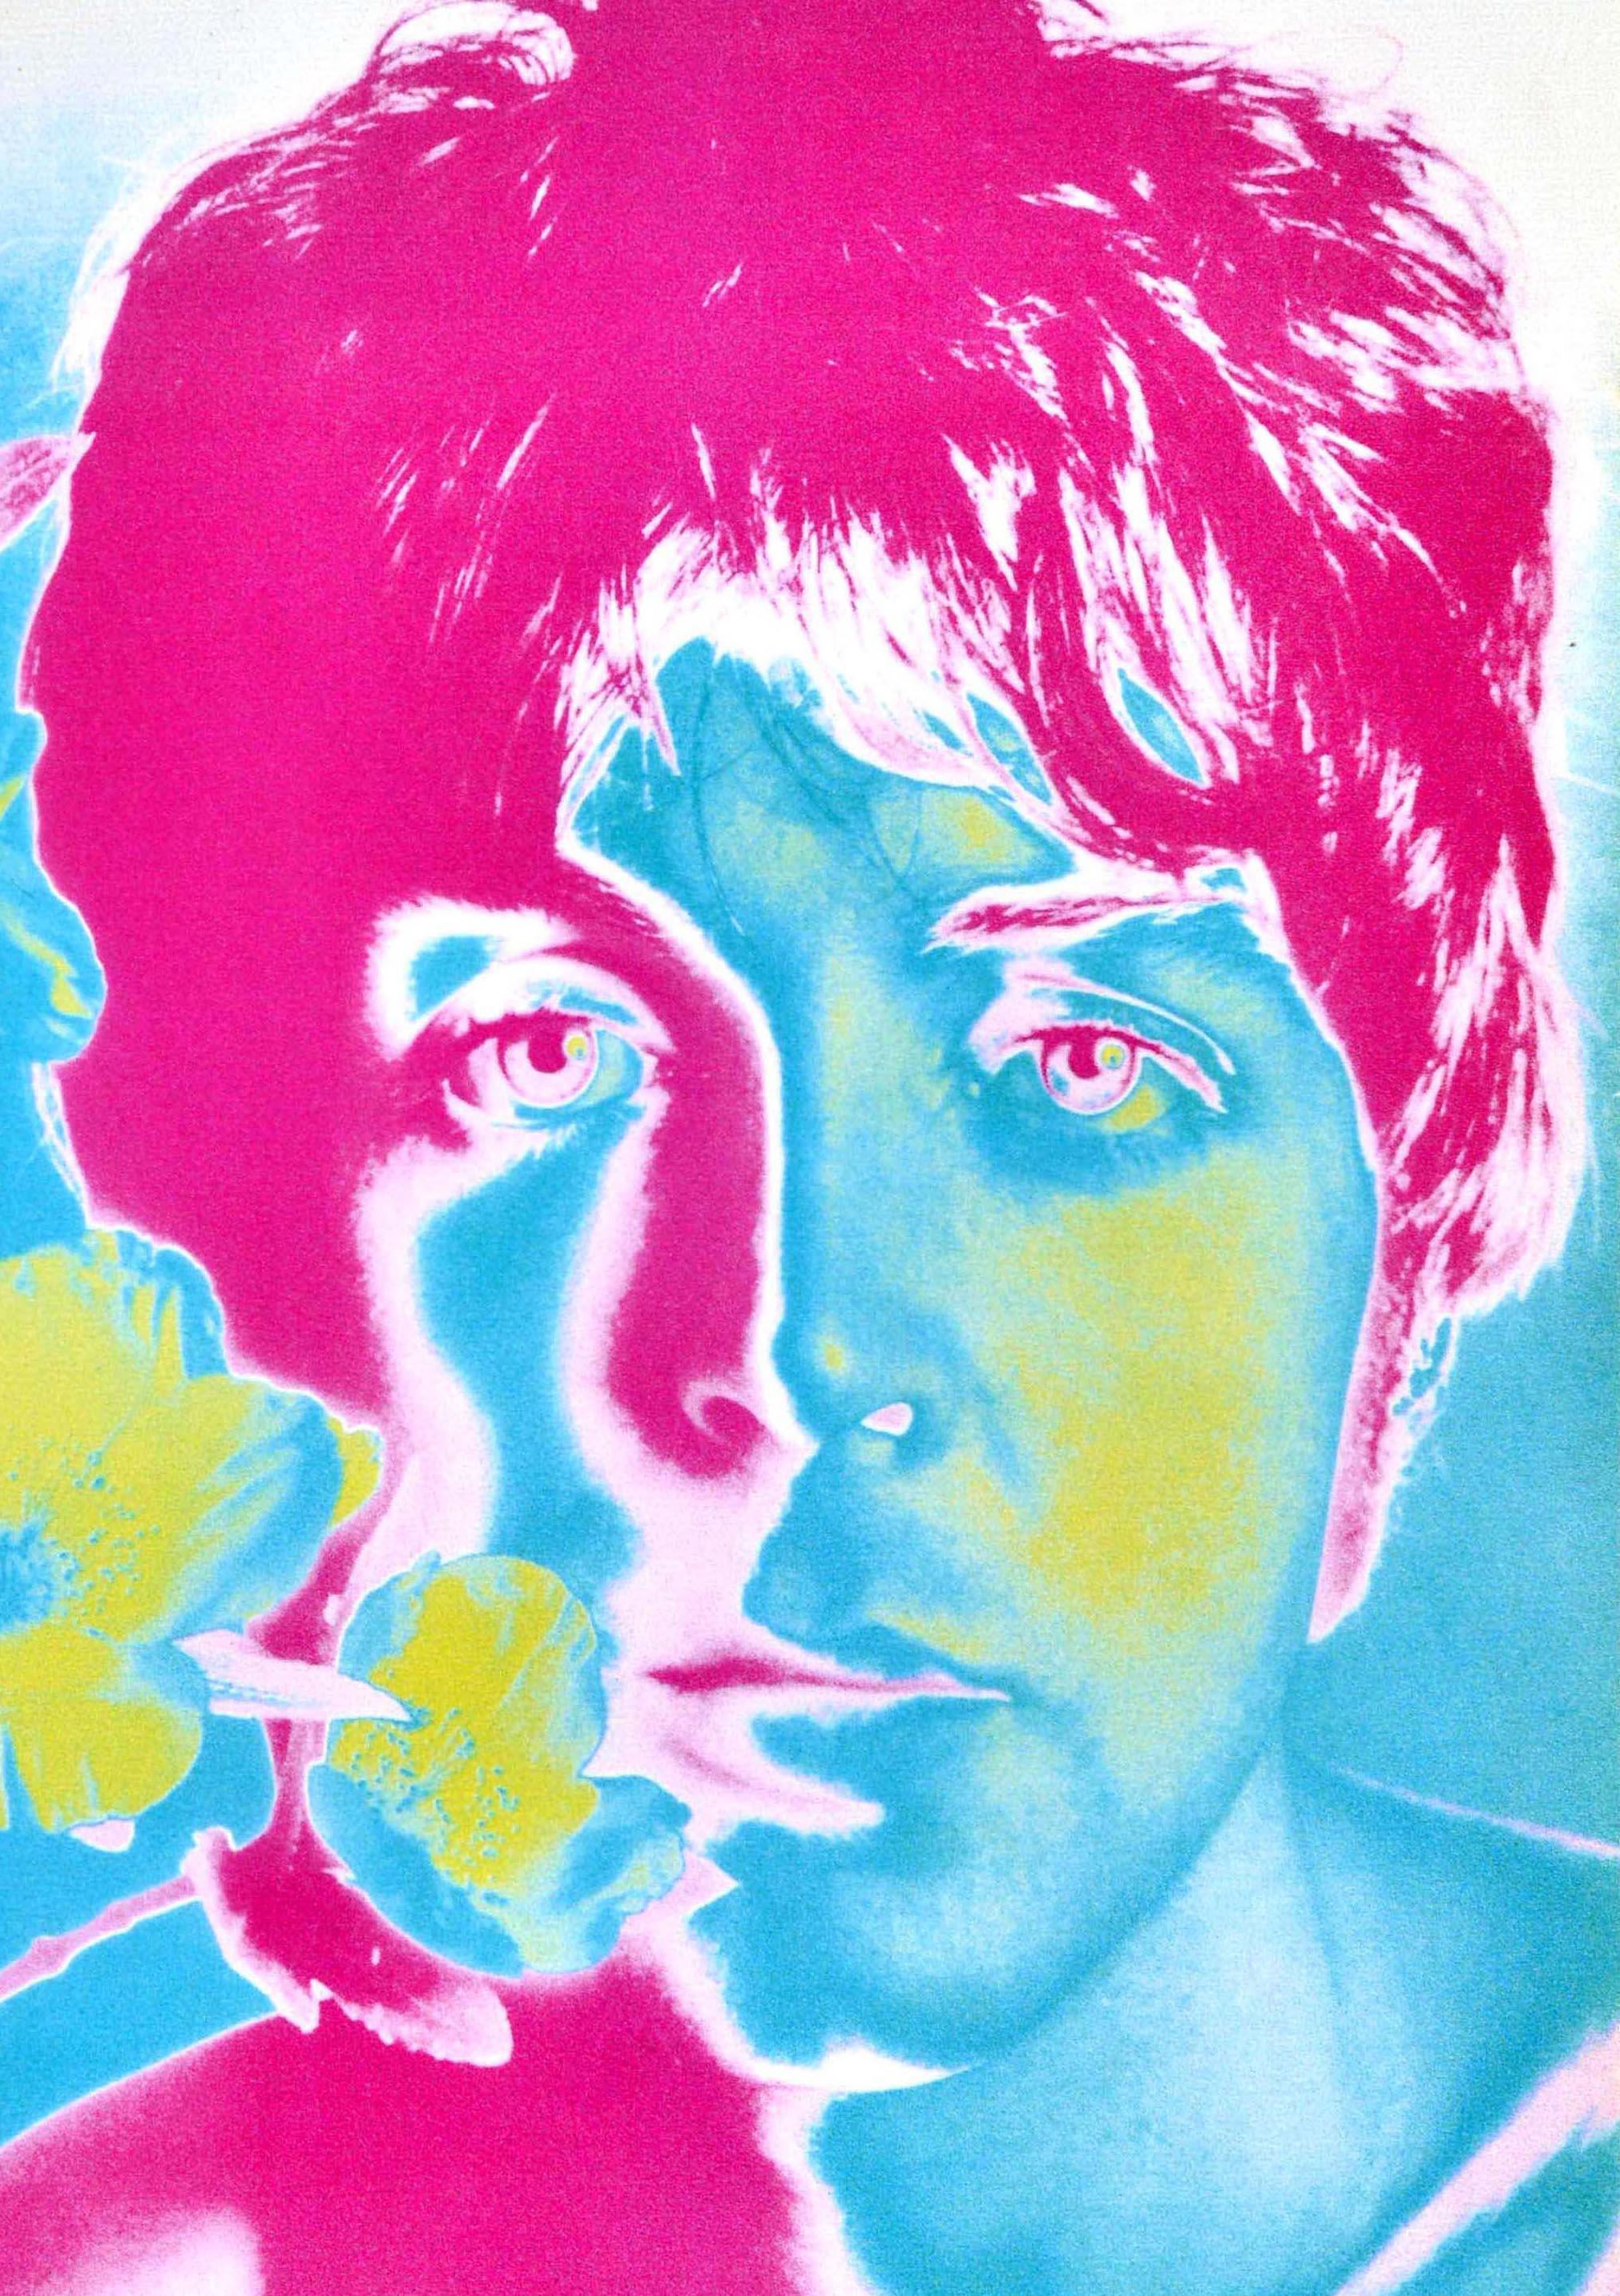 Original Vintage Music Advertising Poster Beatles Paul McCartney Flower Avedon - Print by Richard Avedon